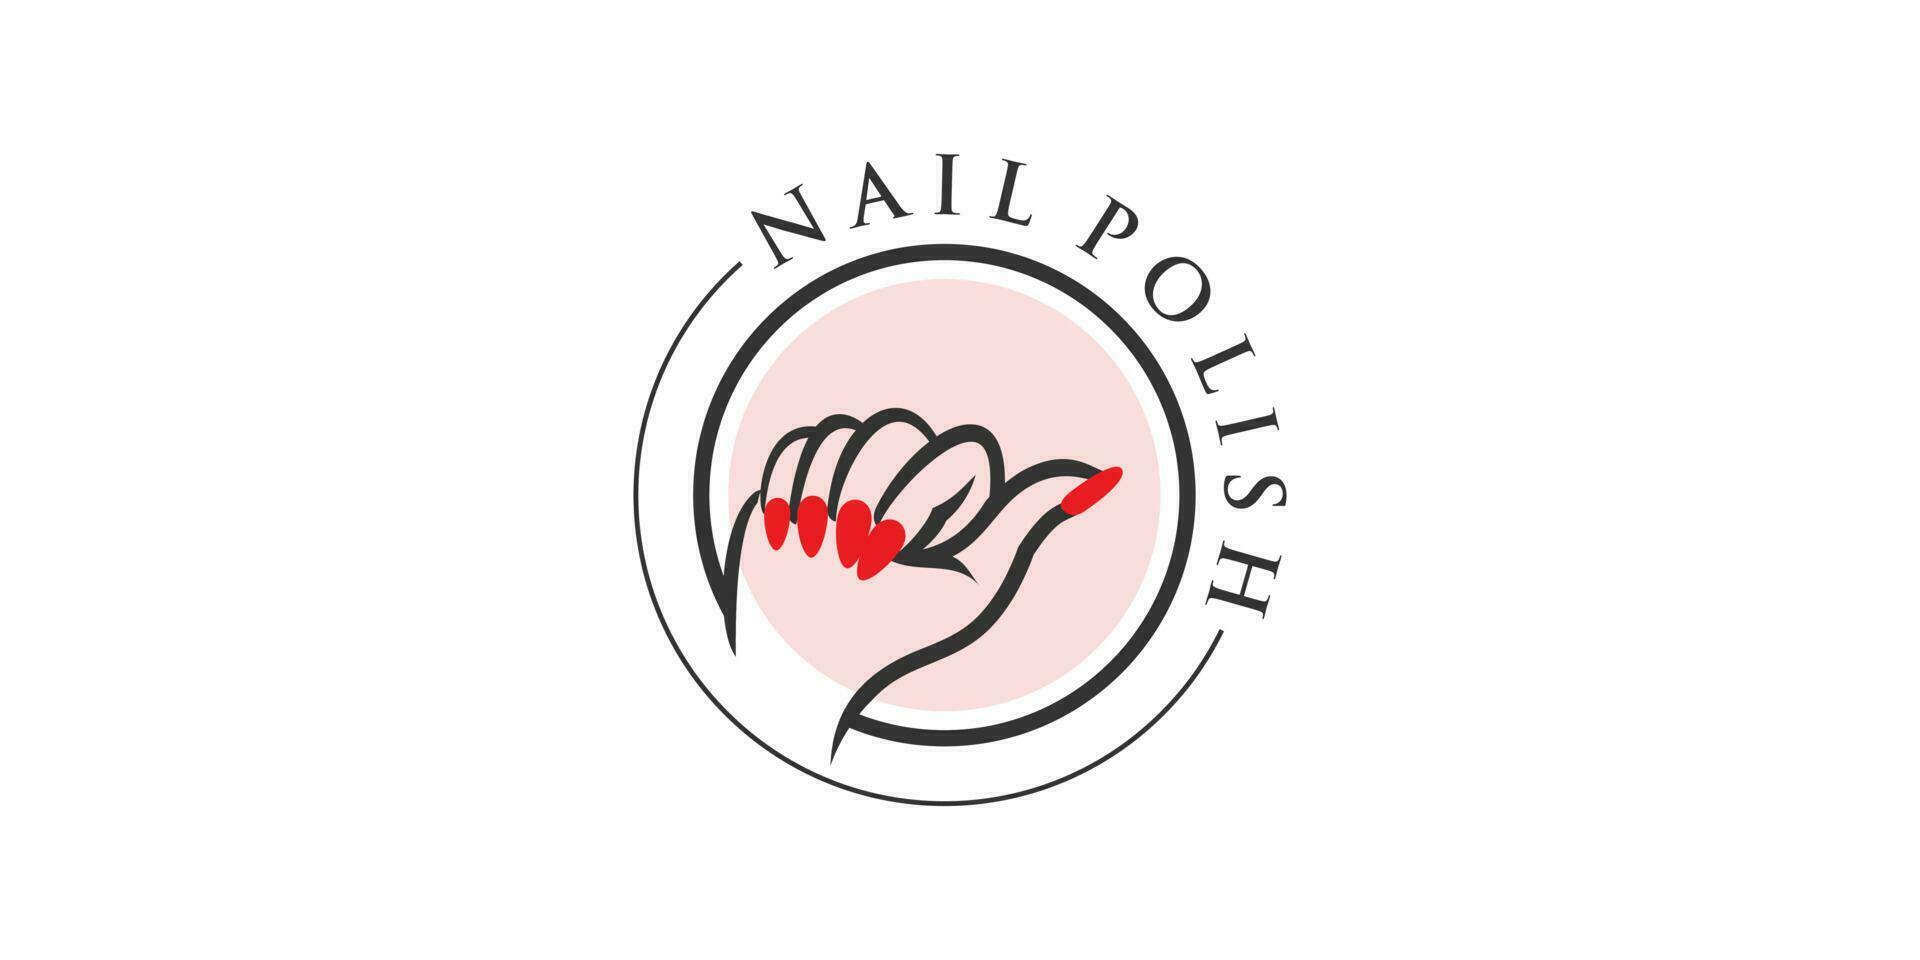 nagel Pools logo idee voor schoonheid met stijl modern vector